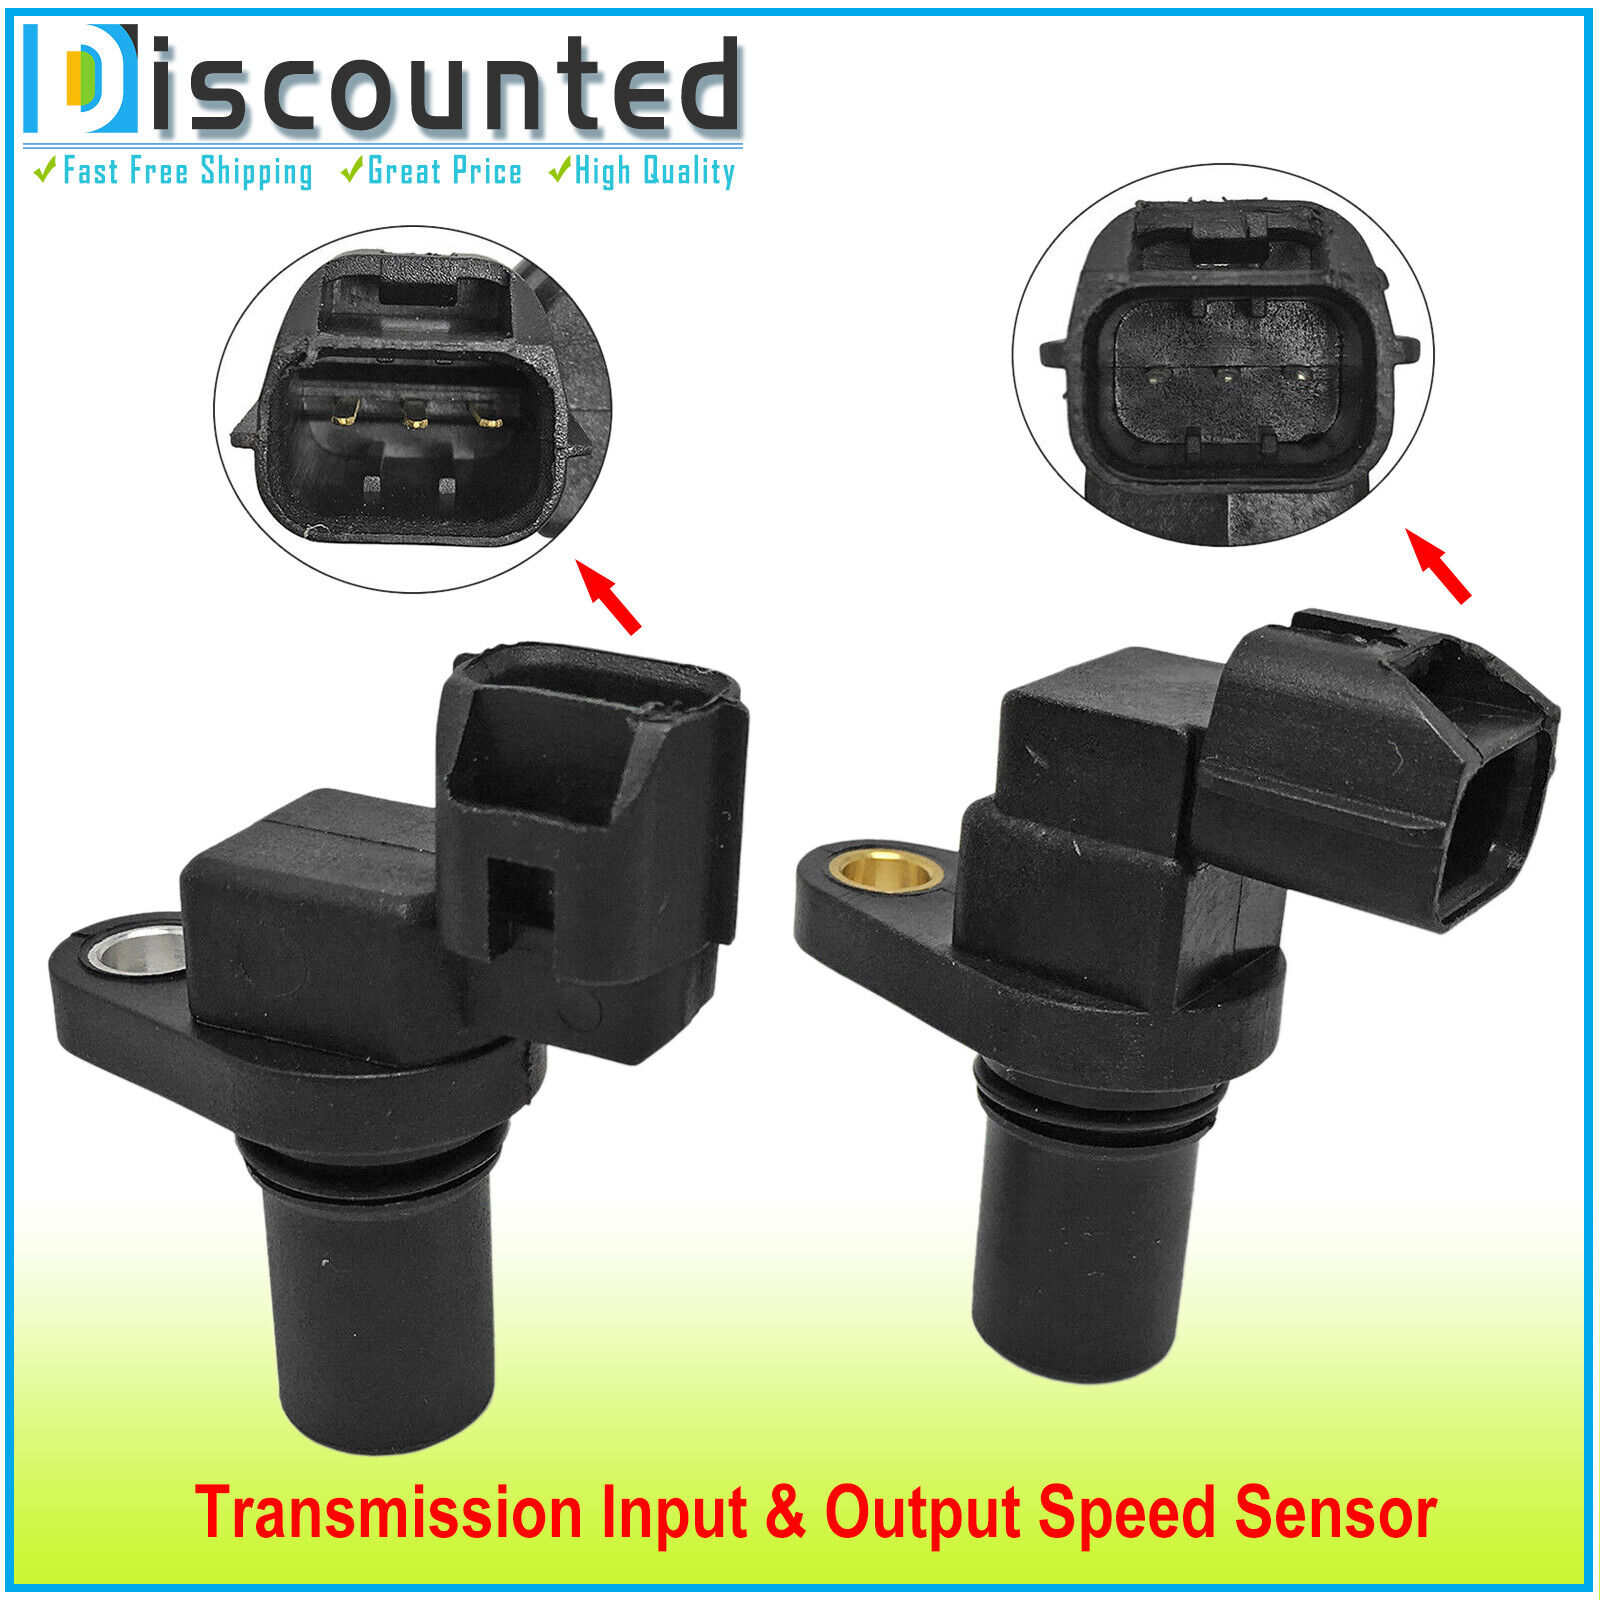 Set of 2 Trans Input & Output Speed Sensor For 2003-12 Hyundai Elantra, Santa Fe